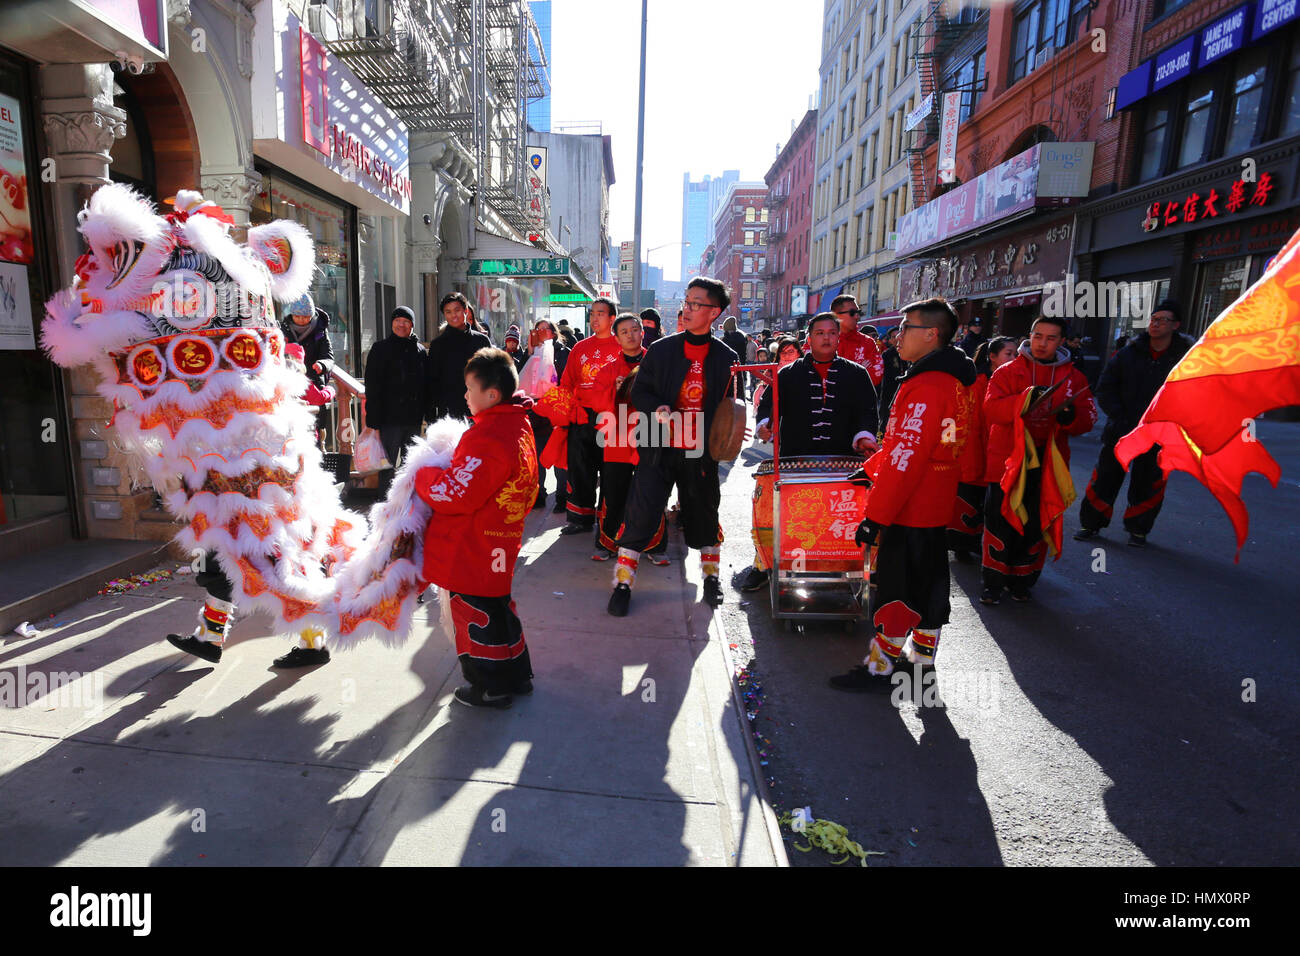 Nueva York, Estados Unidos. 04 Feb, 2017. Chinatown de Nueva York celebra el Año Nuevo Lunar, el Año del Gallo con danzas del león, bailes del dragón, y un gran desfile. Crédito: Robert K. Chin/Pacific Press/Alamy Live News Foto de stock